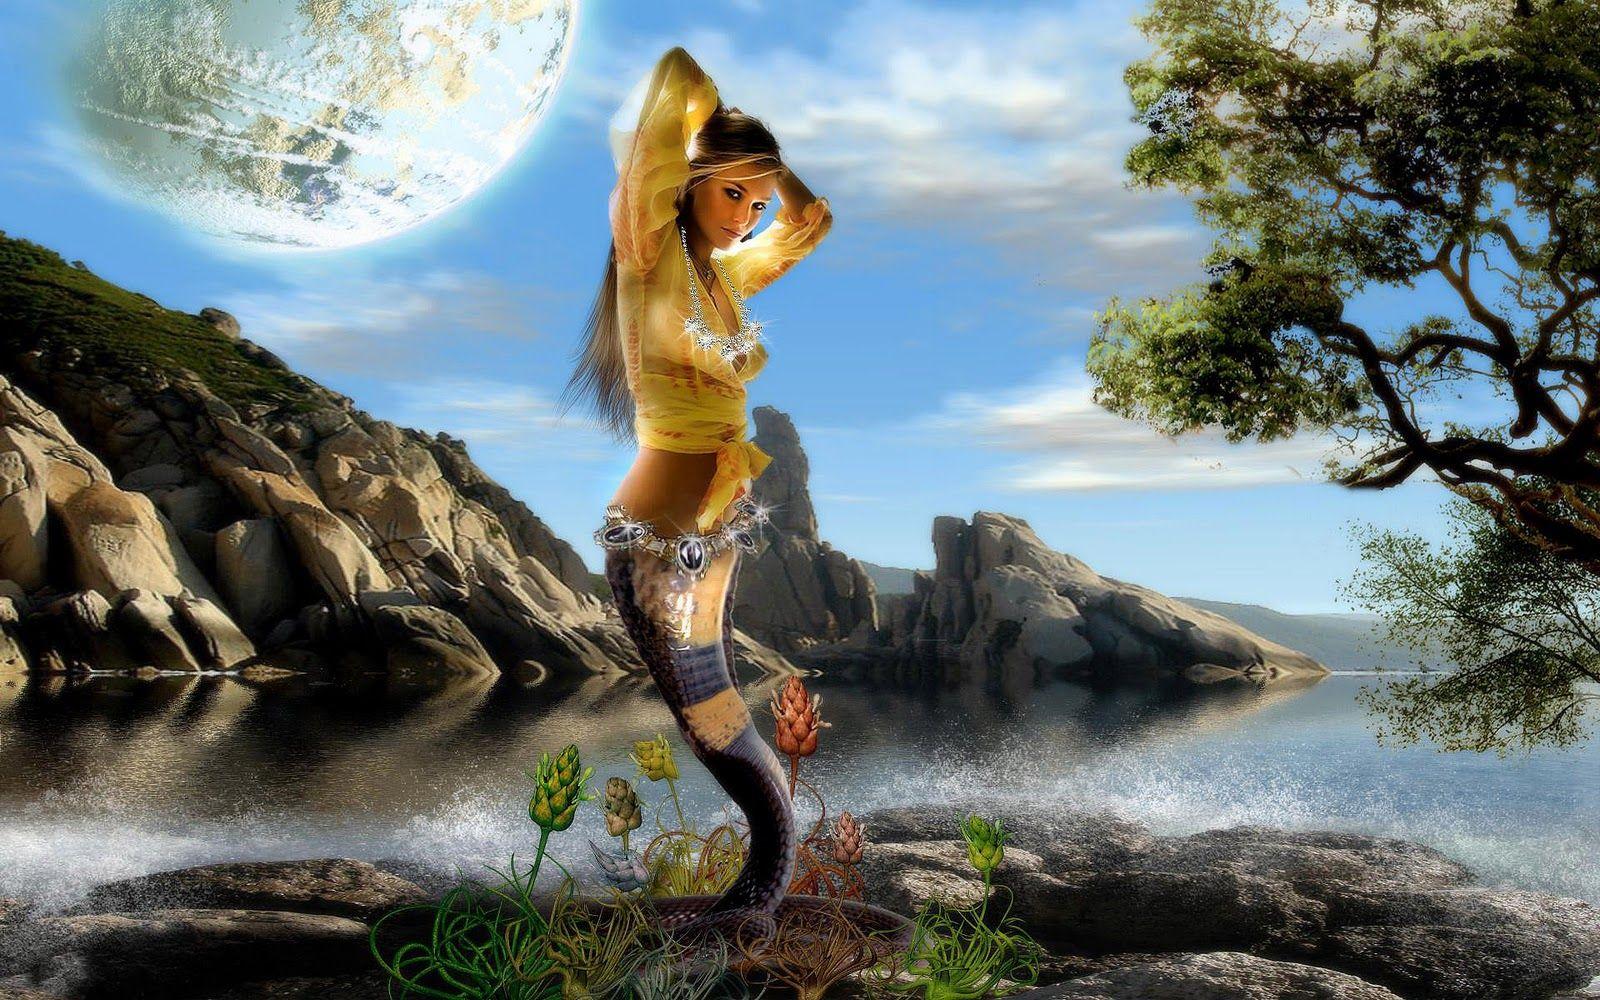 fantasy wallpaper. Mermaid dancing in this fantasy